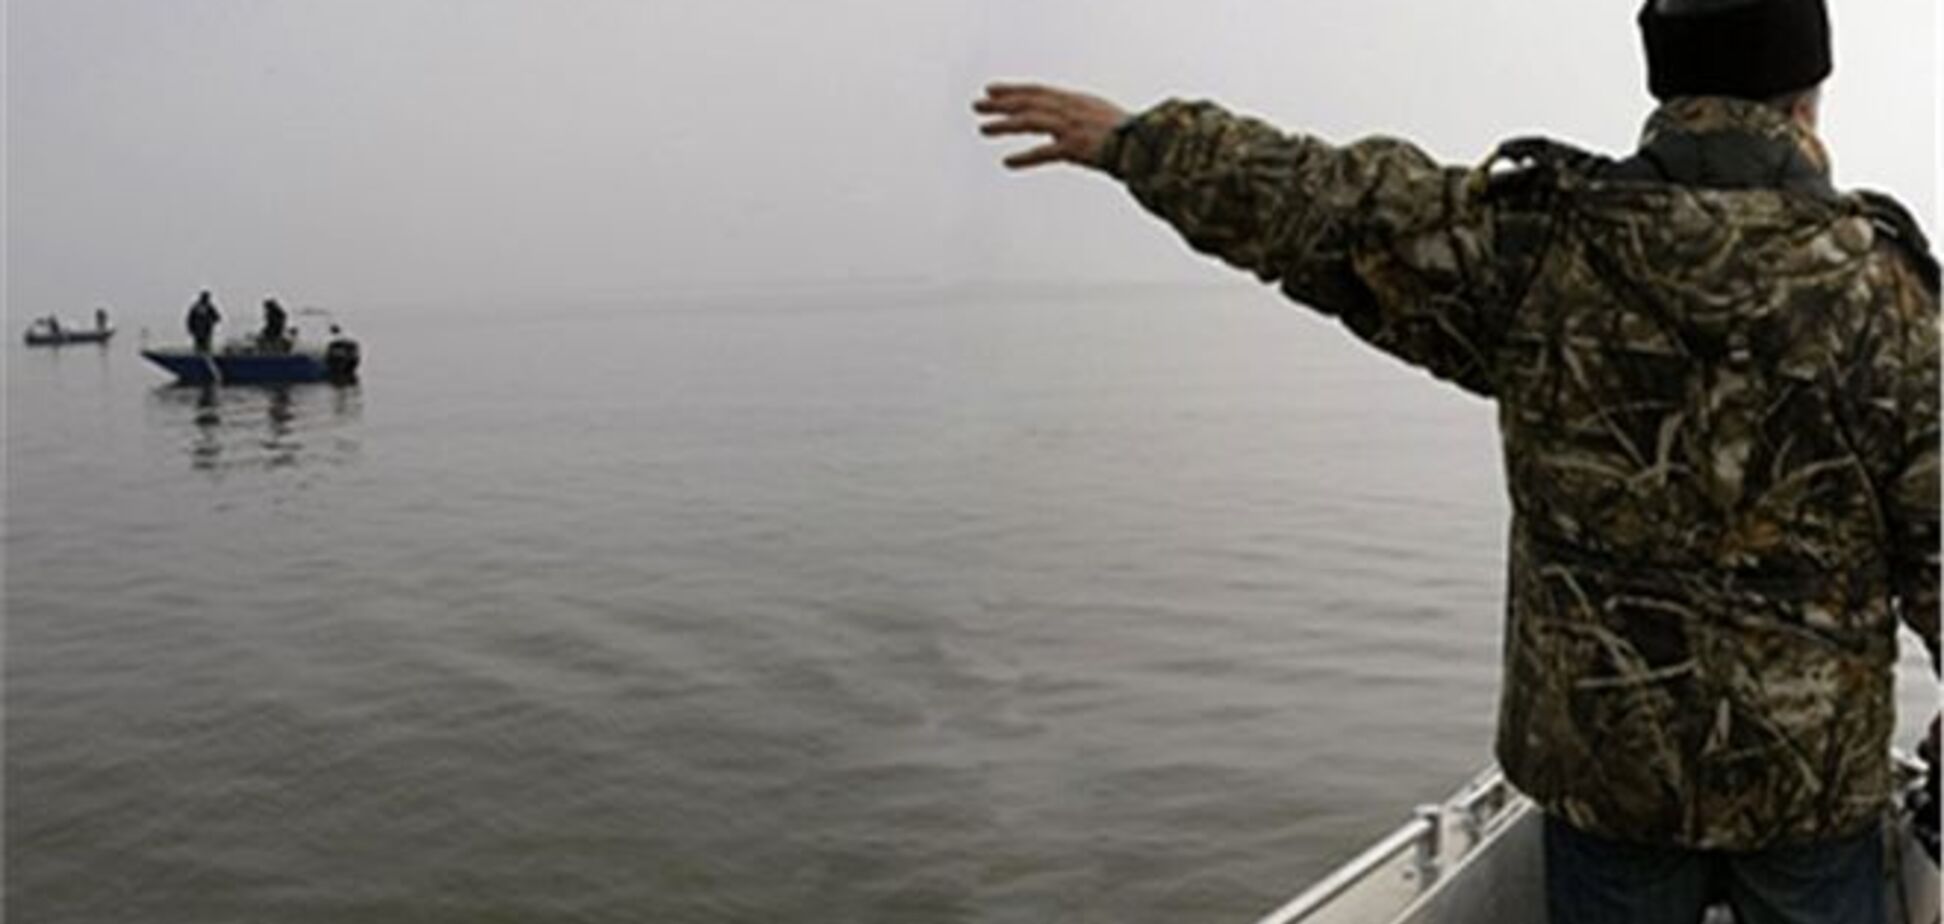 'Батьківщина' ждет от властей 'жесткой реакции' на инцидент в Азовском море